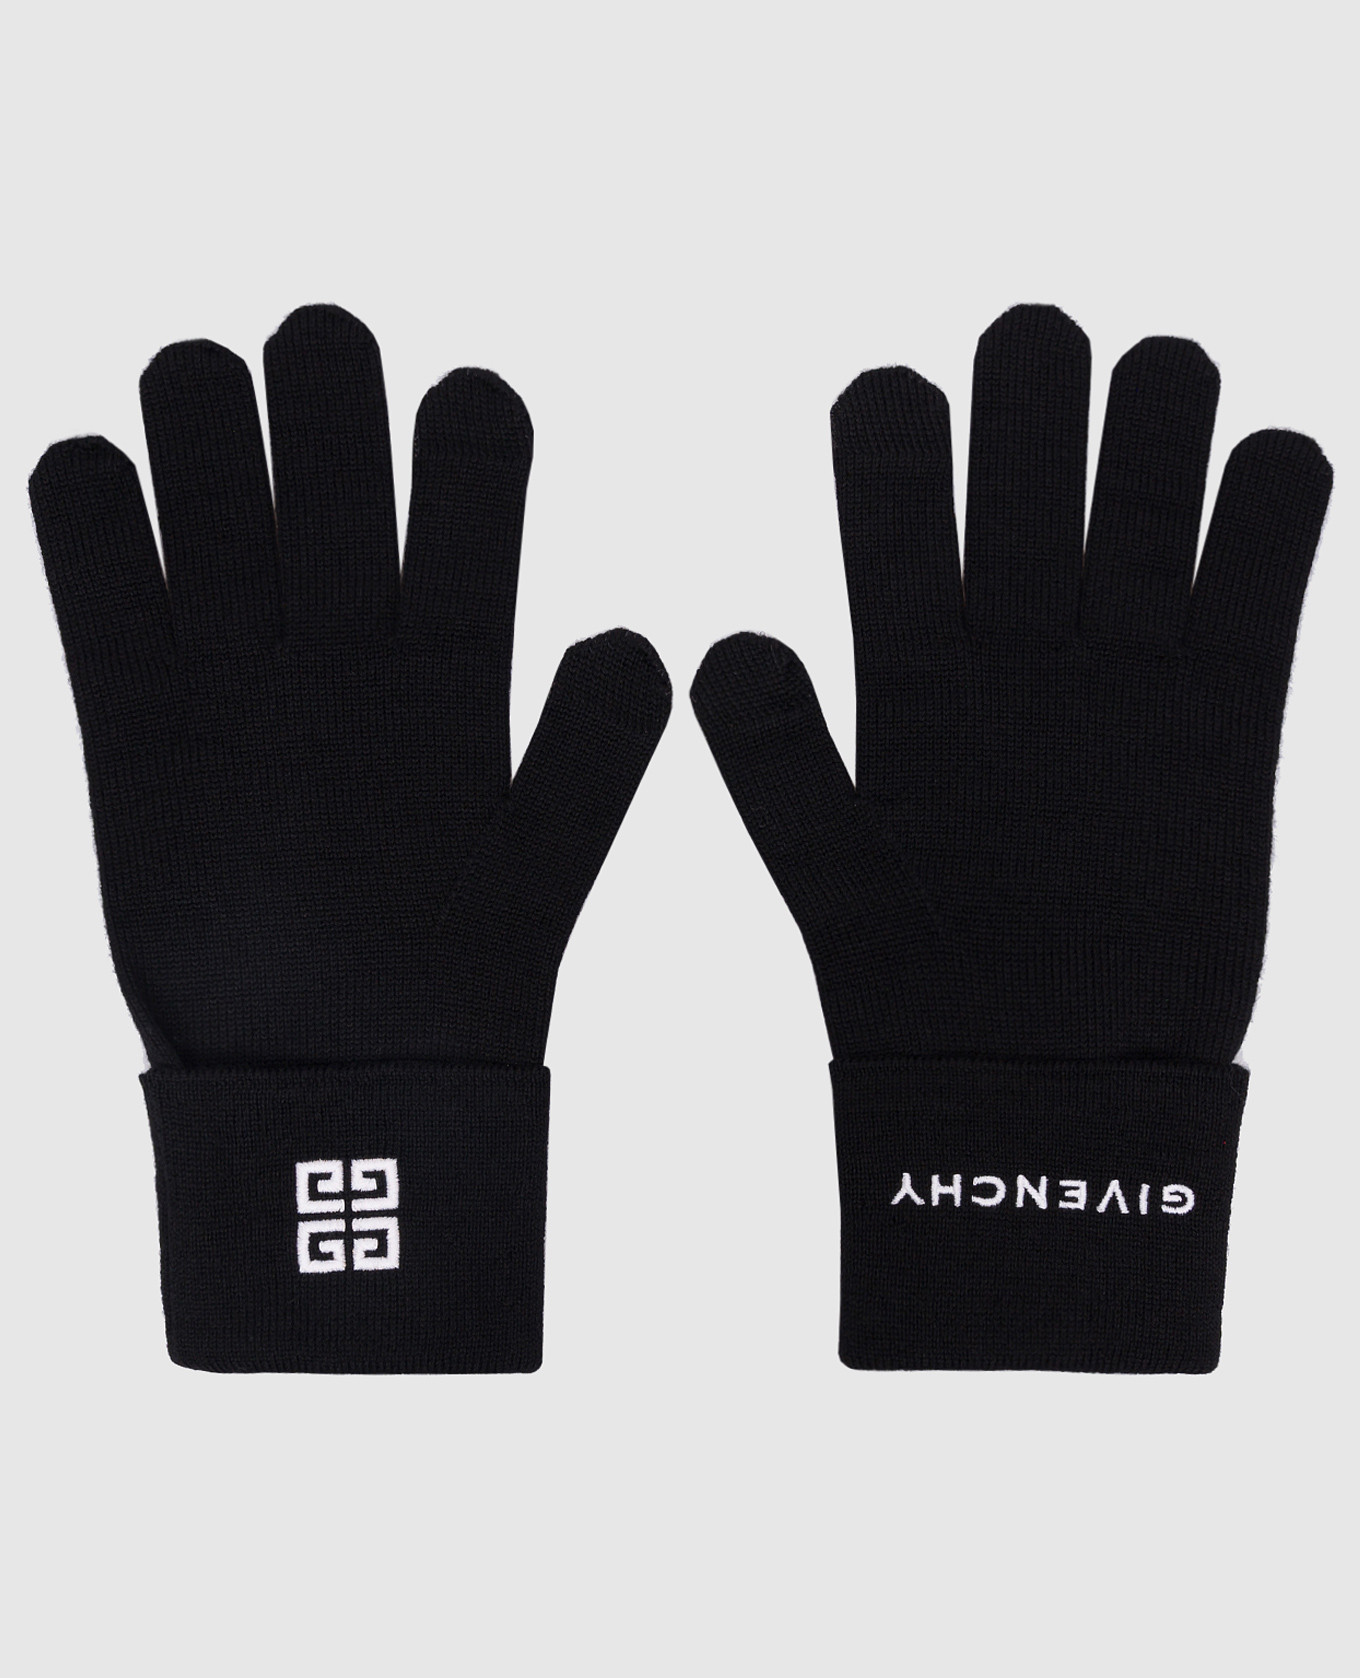 Черные перчатки из шерсти с контрастной вышивкой логотипа